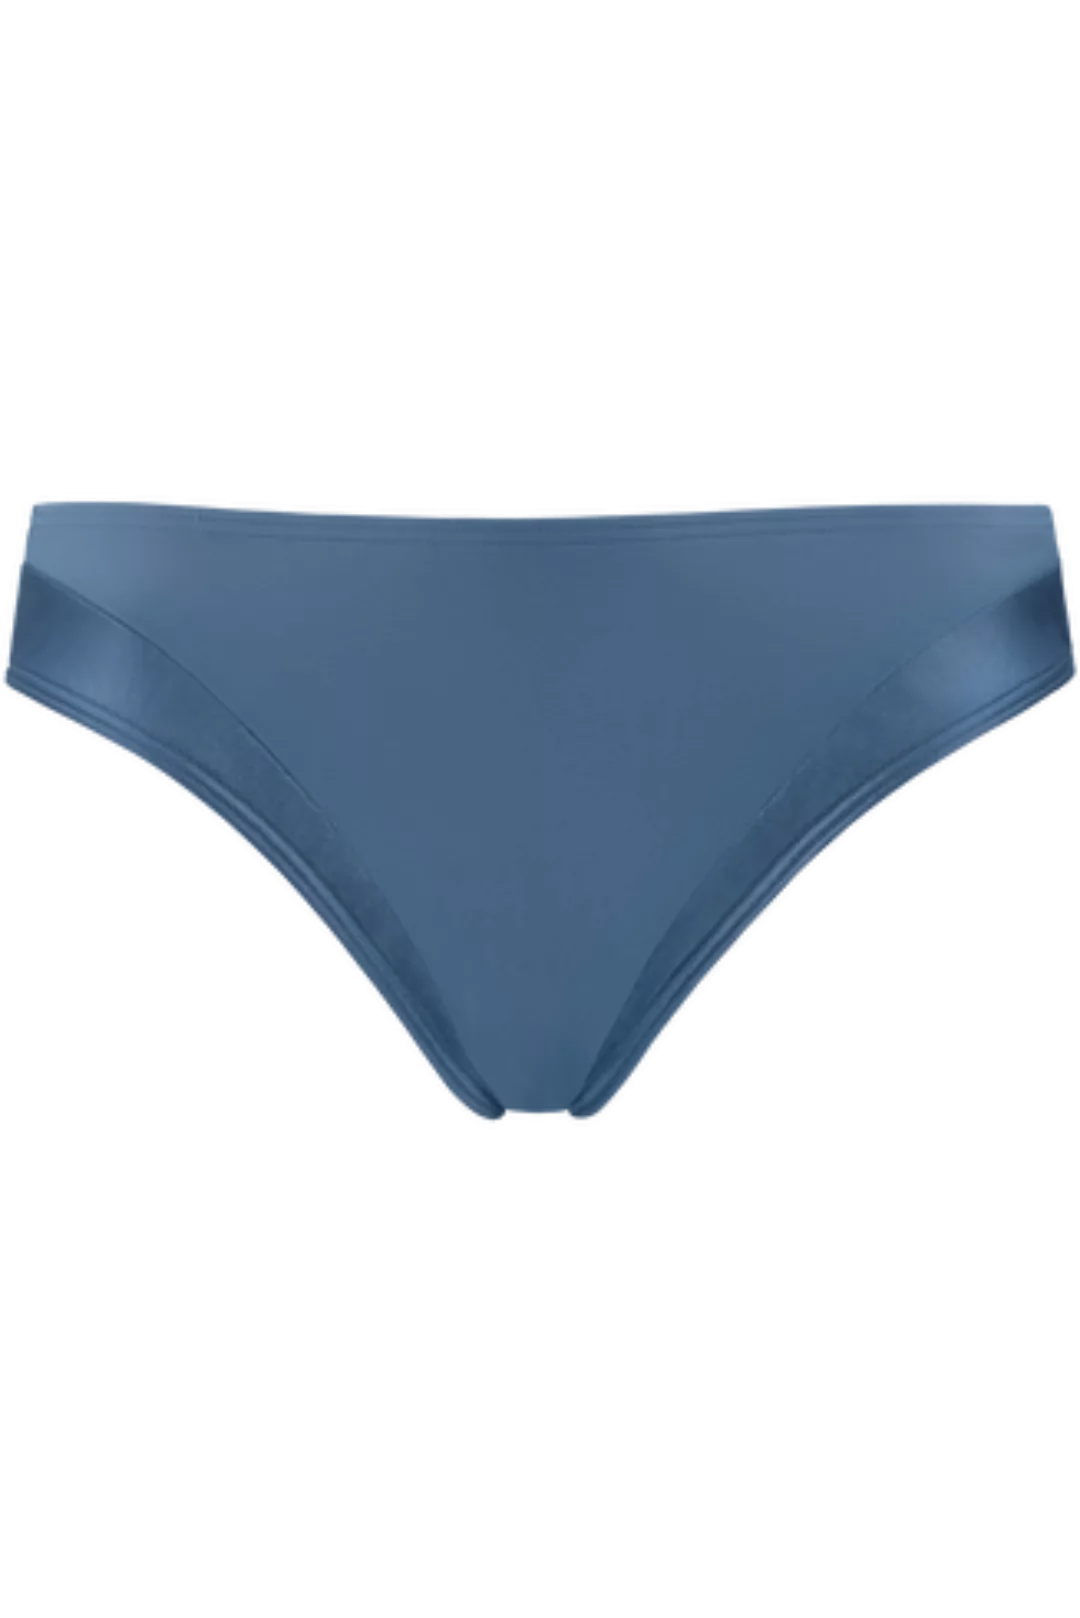 Cache Coeur 5 Cm Bikinislip |  Air Force Blue günstig online kaufen